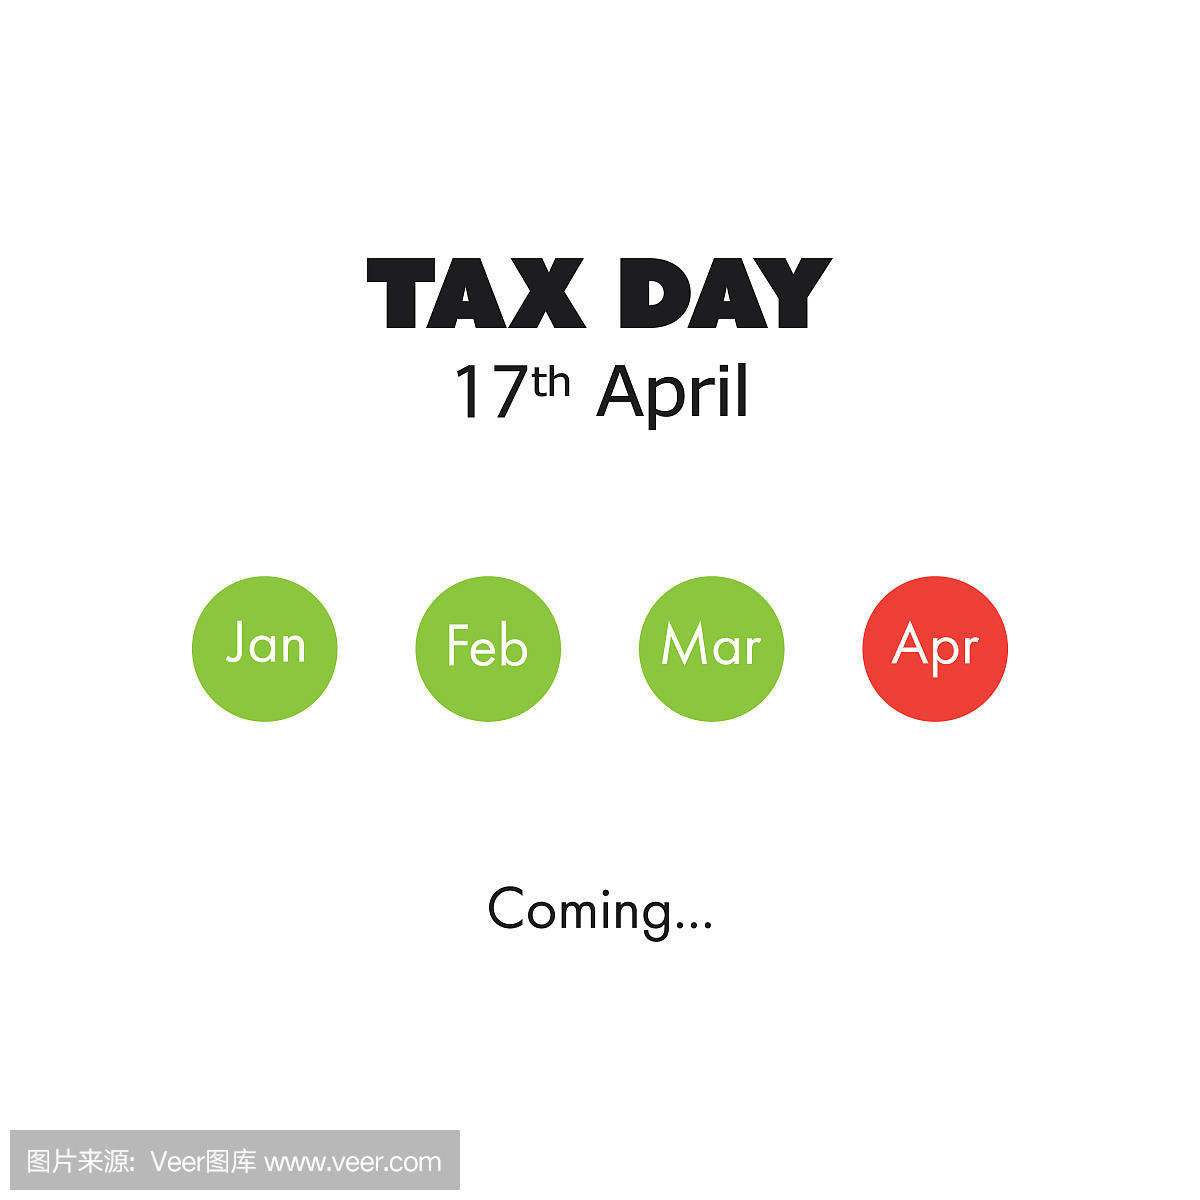 纳税日即将到来,美国税收截止日期